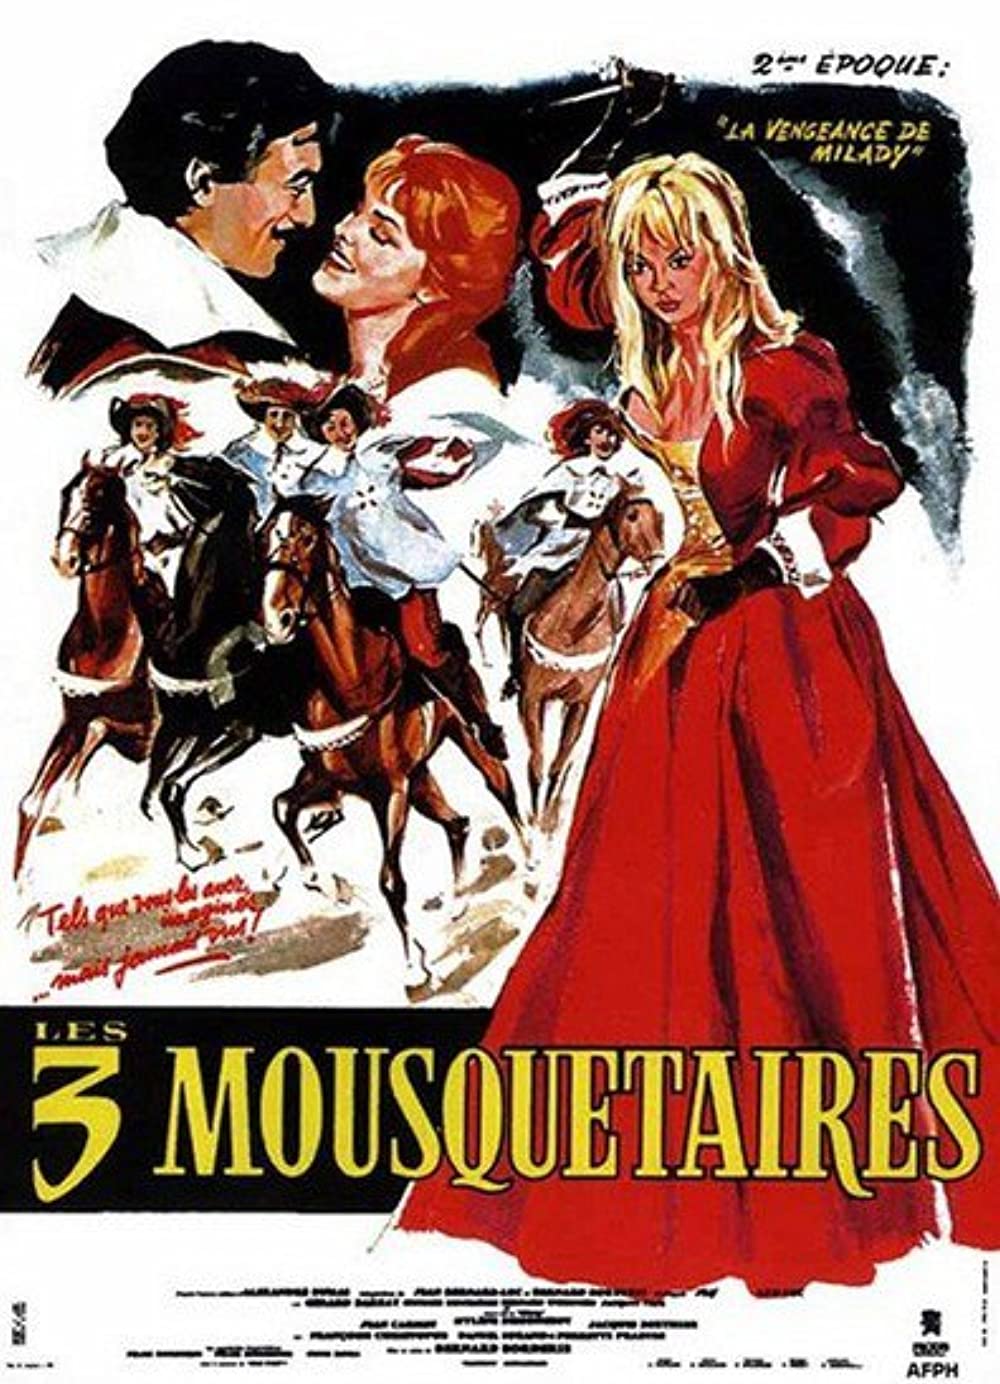 Stiahni si Filmy CZ/SK dabing Tri musketyri: Pomsta Milady de Winter / Les trois mousquetaires: La vengeance de Milady (1961)(CZ)[TvRip] = CSFD 80%